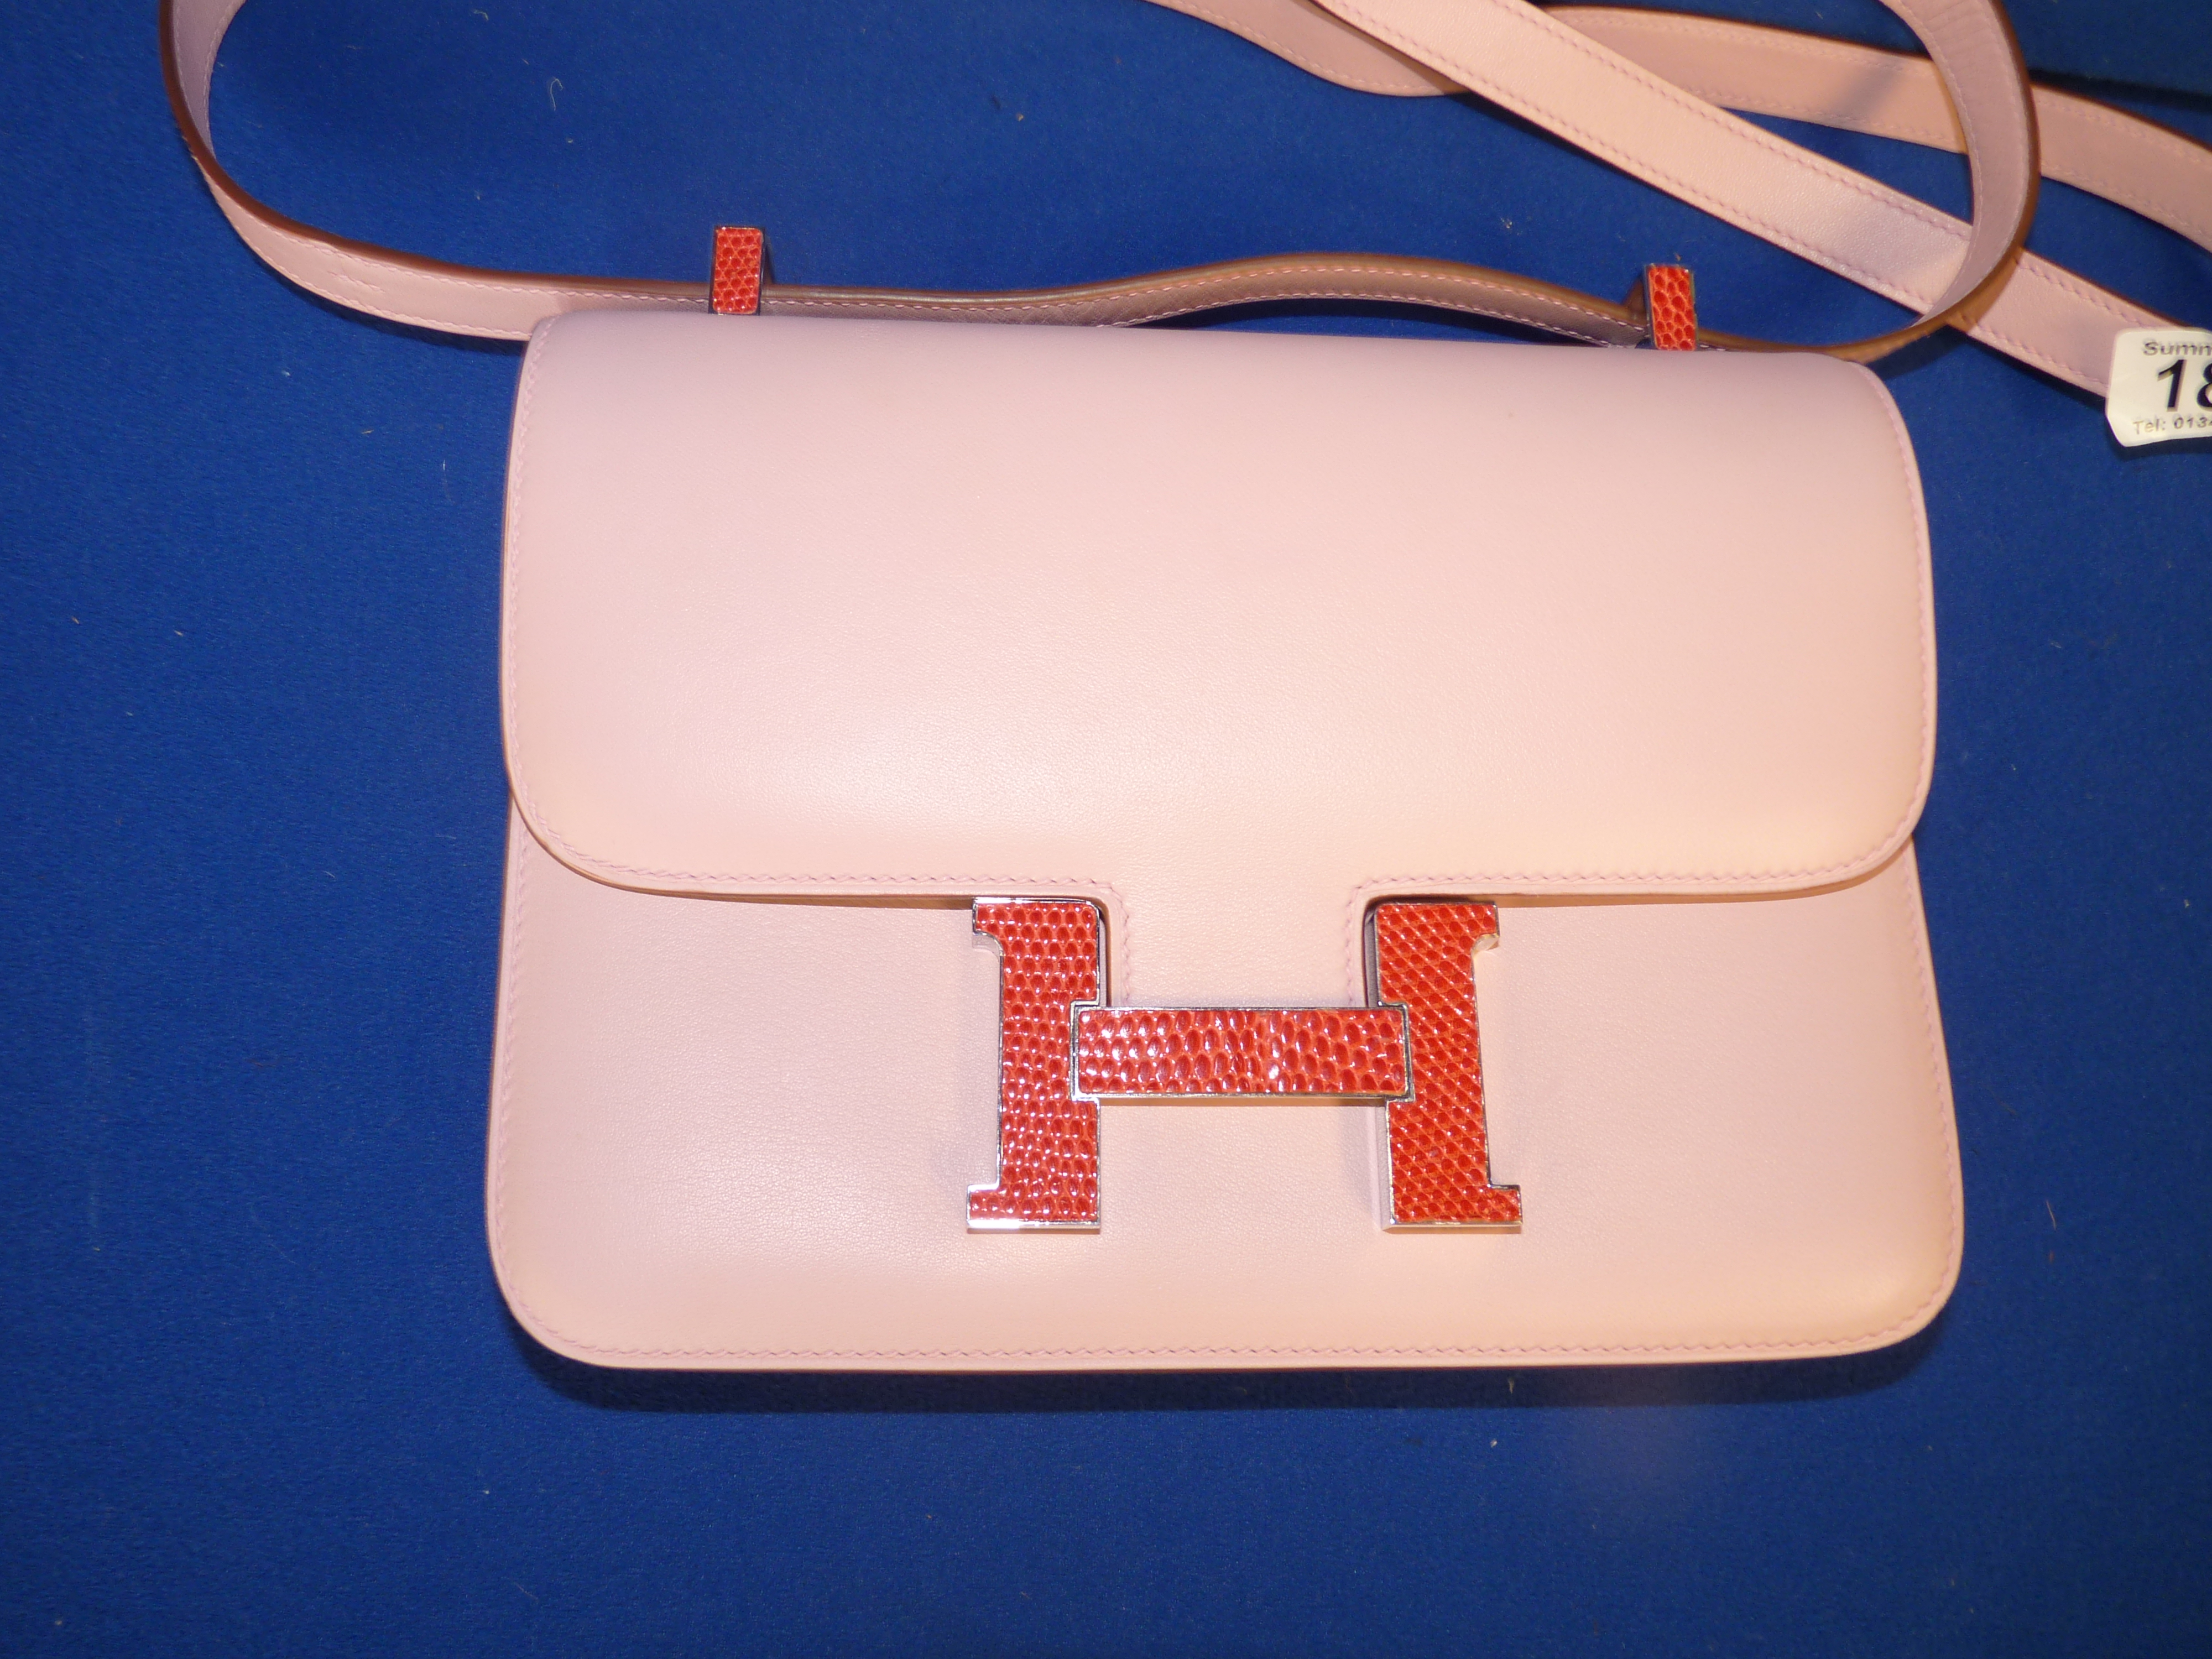 Boxed Hermes Pink Ladies Handbag - Image 13 of 14